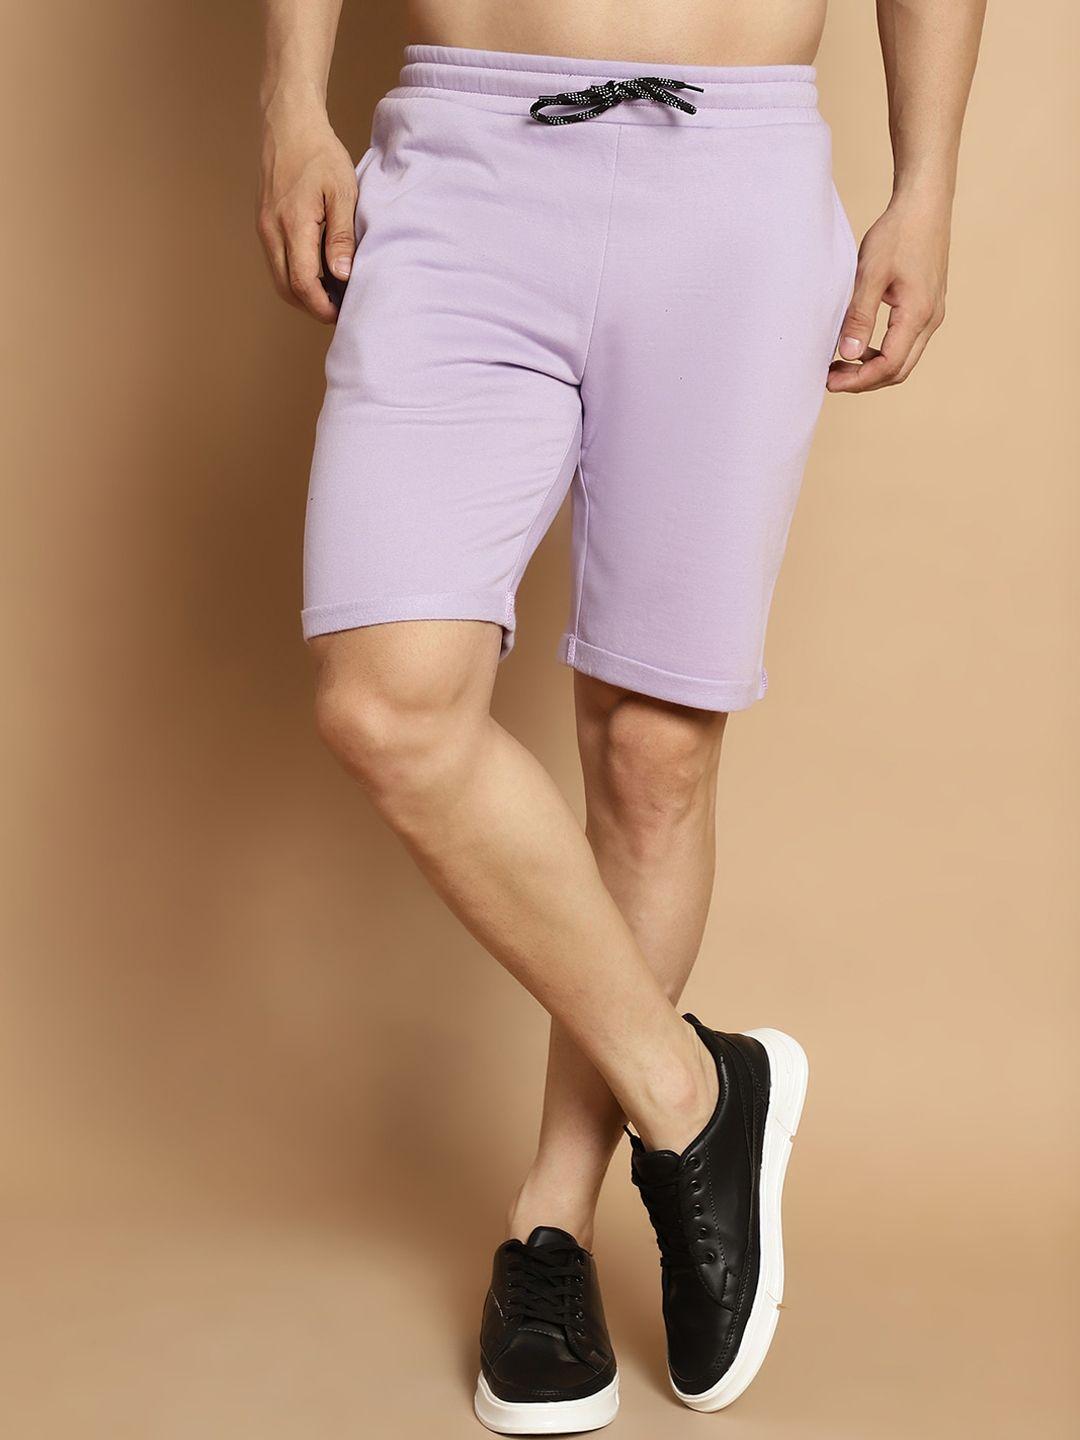 door74 men purple shorts